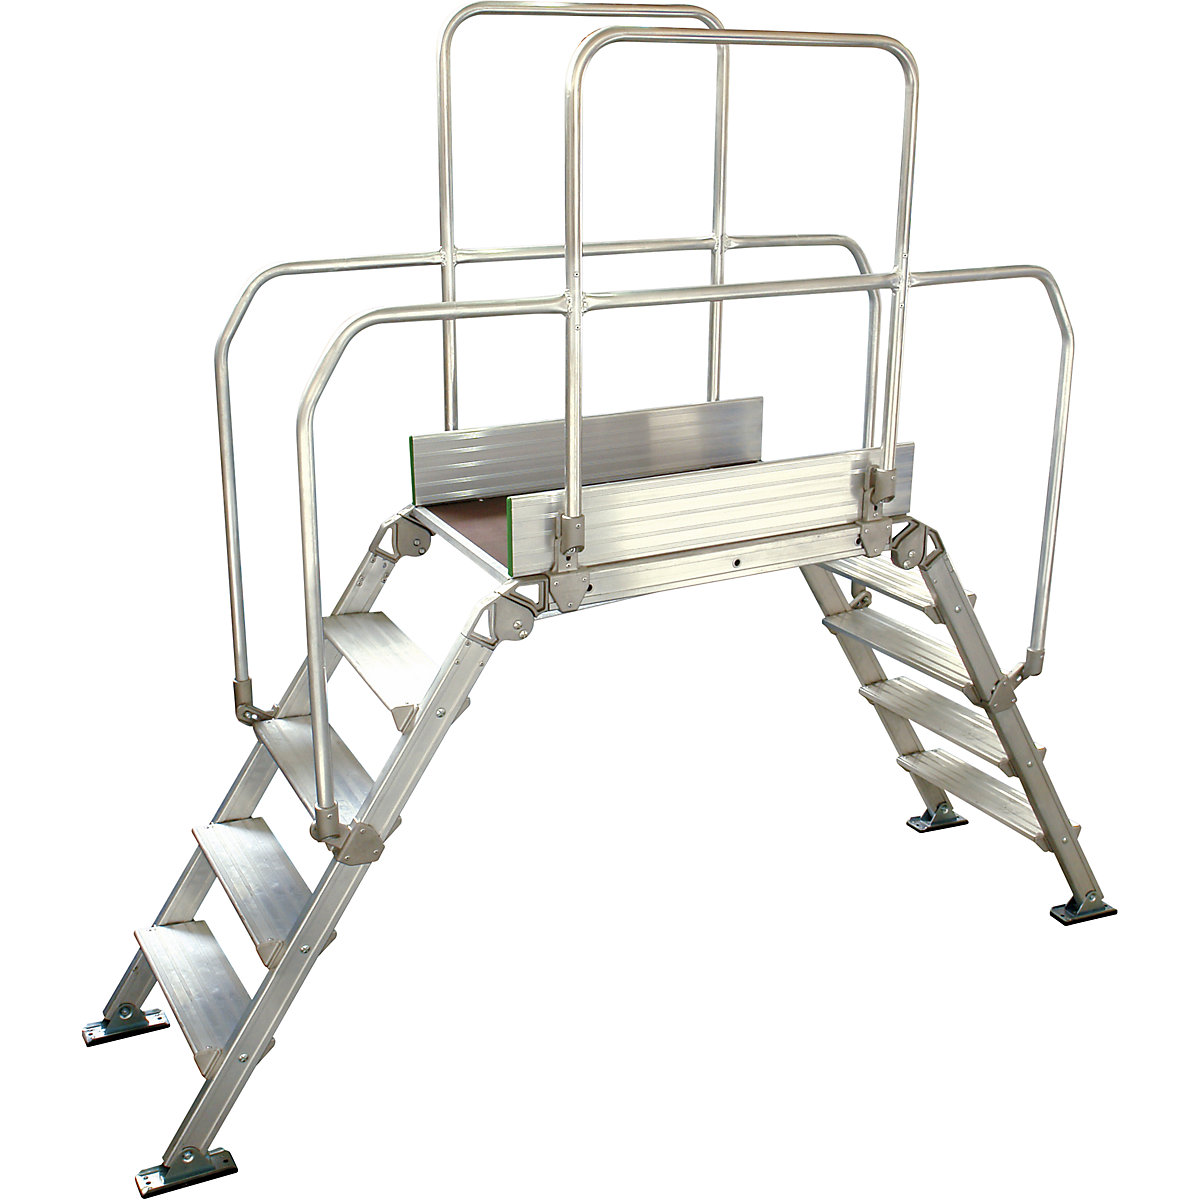 Aluminijasta premostitvena lestev, skupna obremenitev 200 kg, 5 stopnic, podest 900 x 530 mm